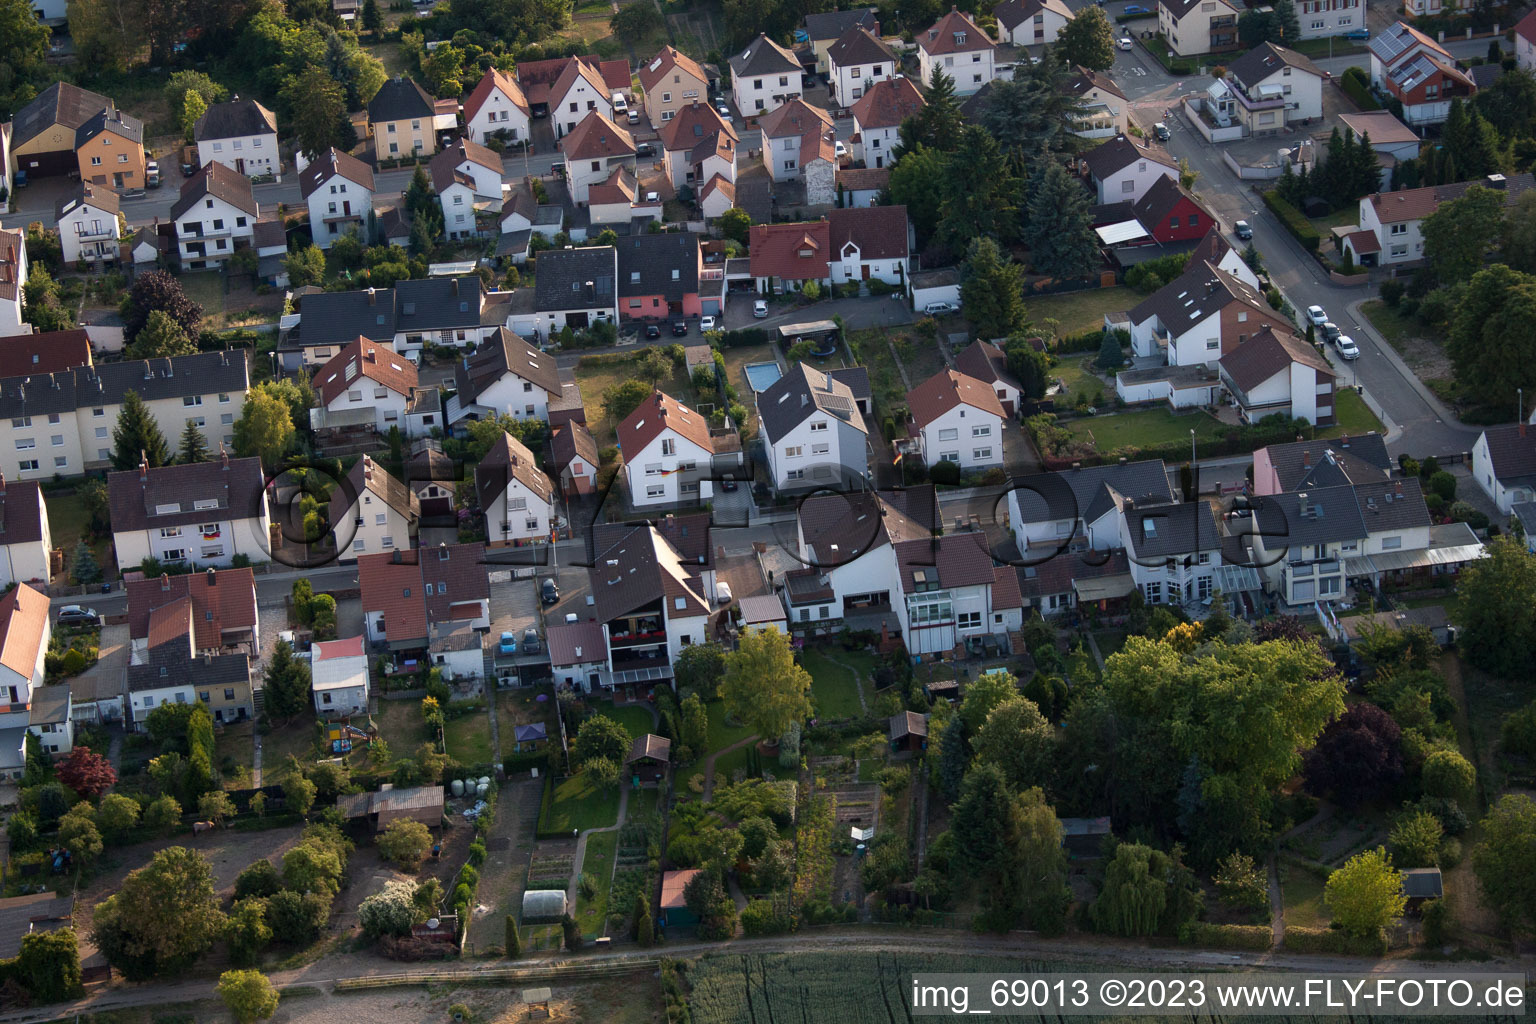 Drone recording of District Dannstadt in Dannstadt-Schauernheim in the state Rhineland-Palatinate, Germany